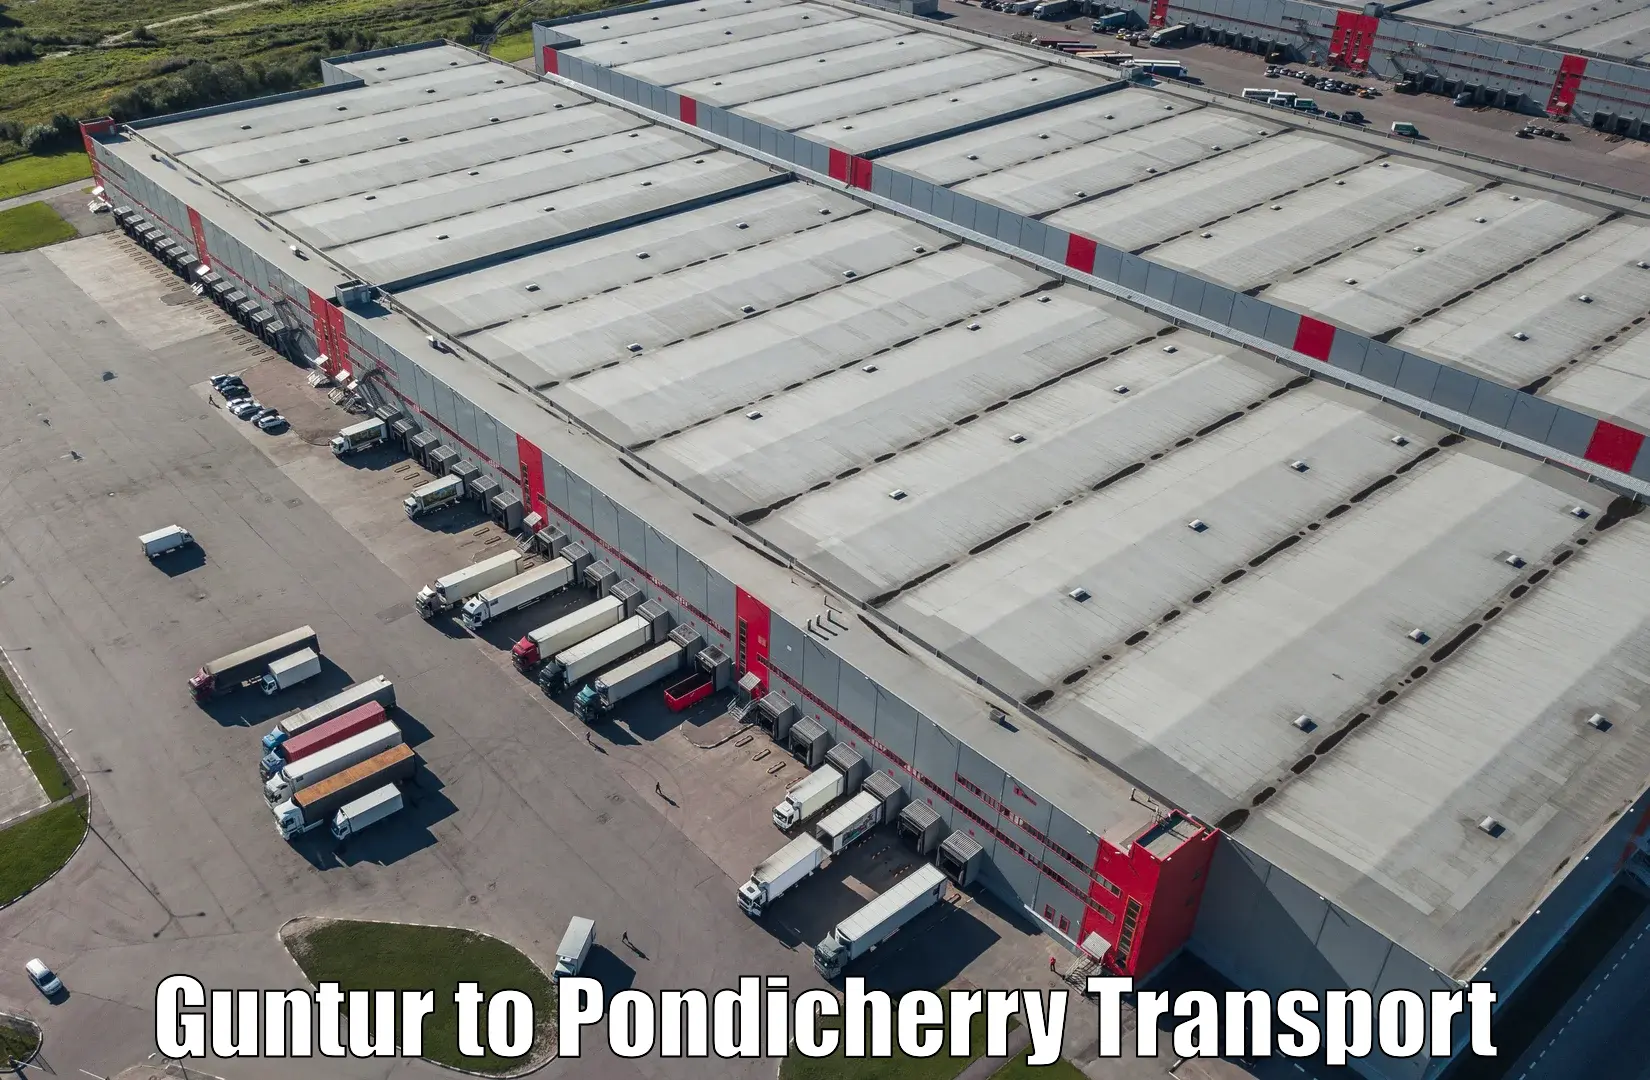 Intercity goods transport Guntur to Pondicherry